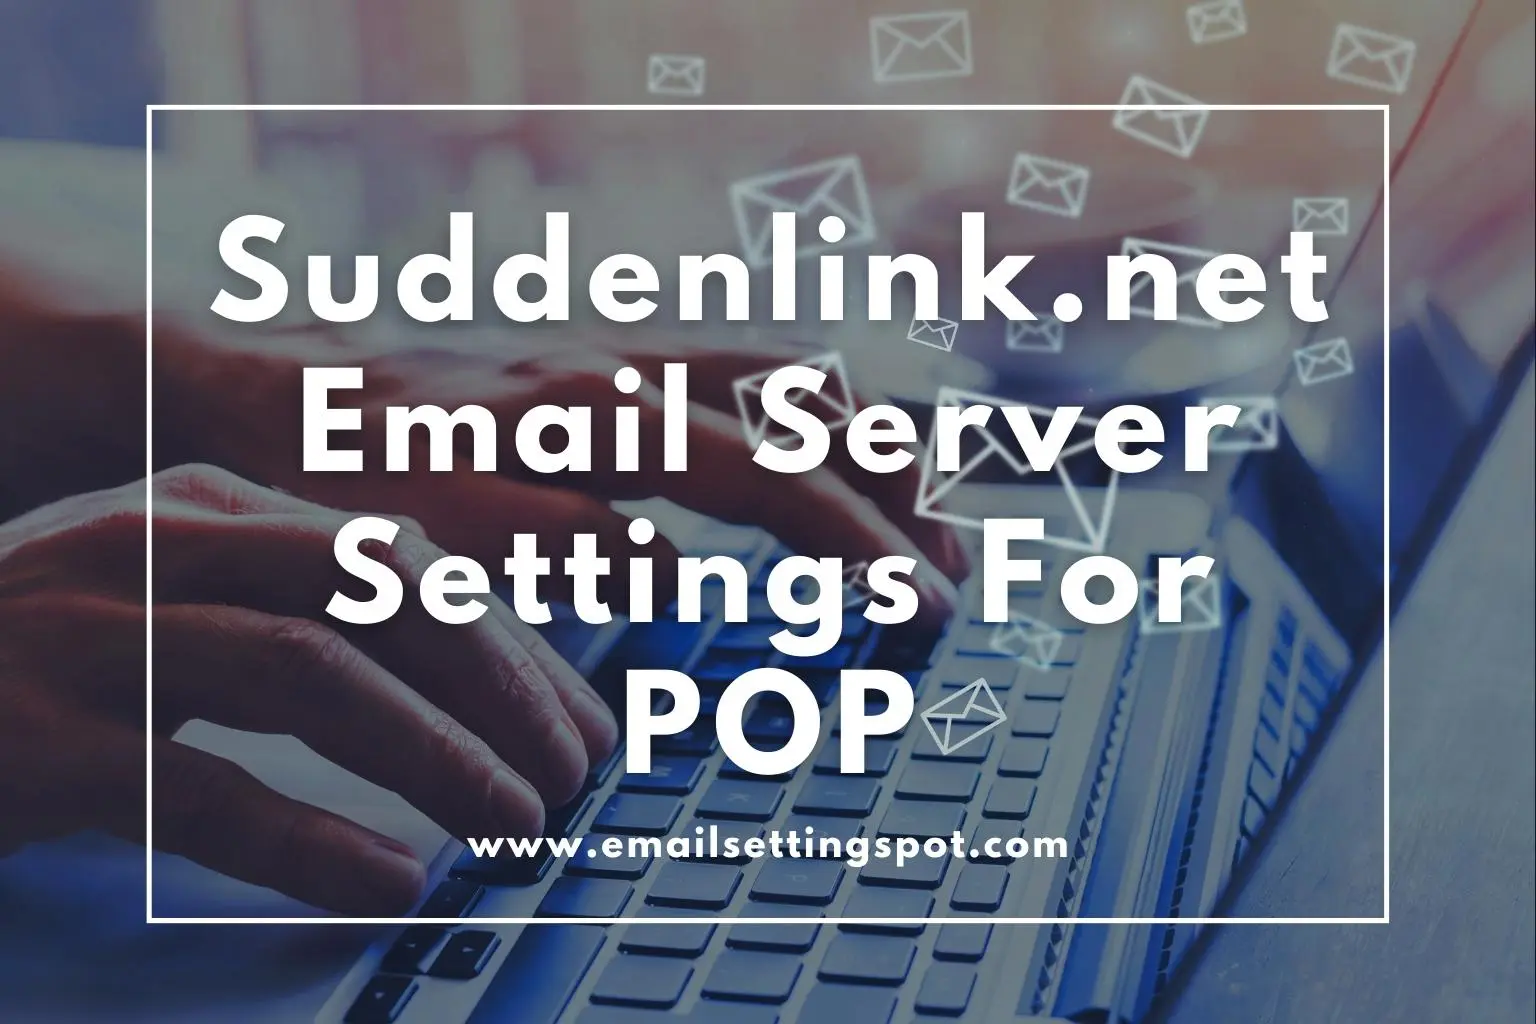 suddenlink.net email server settings pop